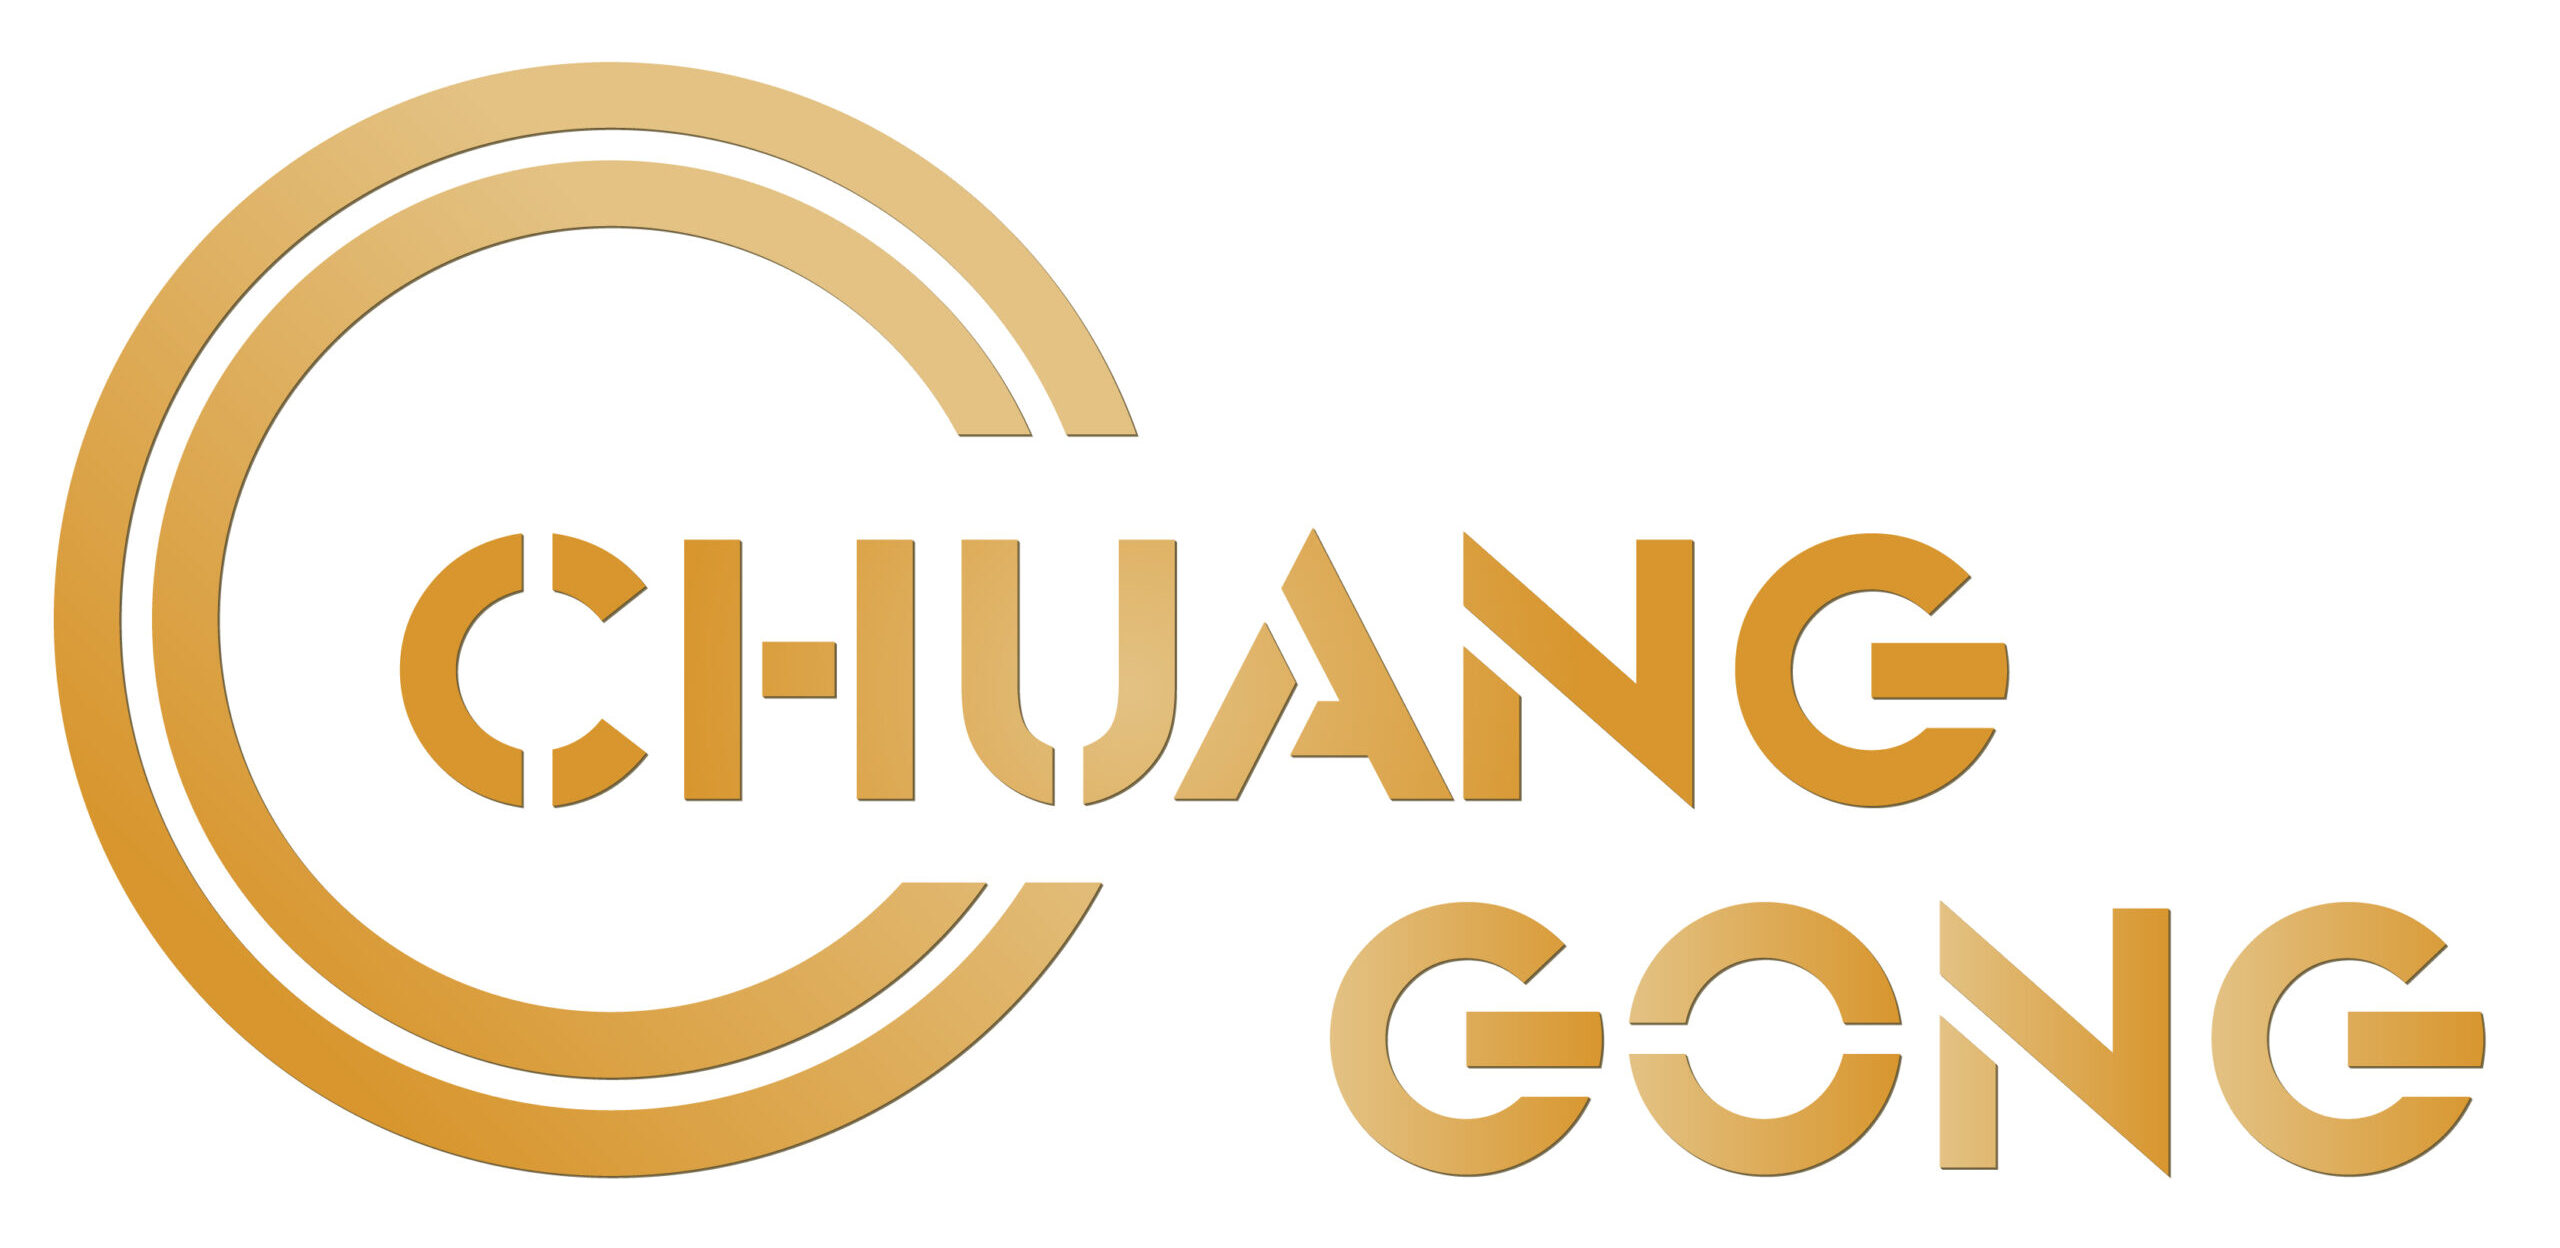 Leshan Chuanggong Machinery Manufacturing Co., Ltd